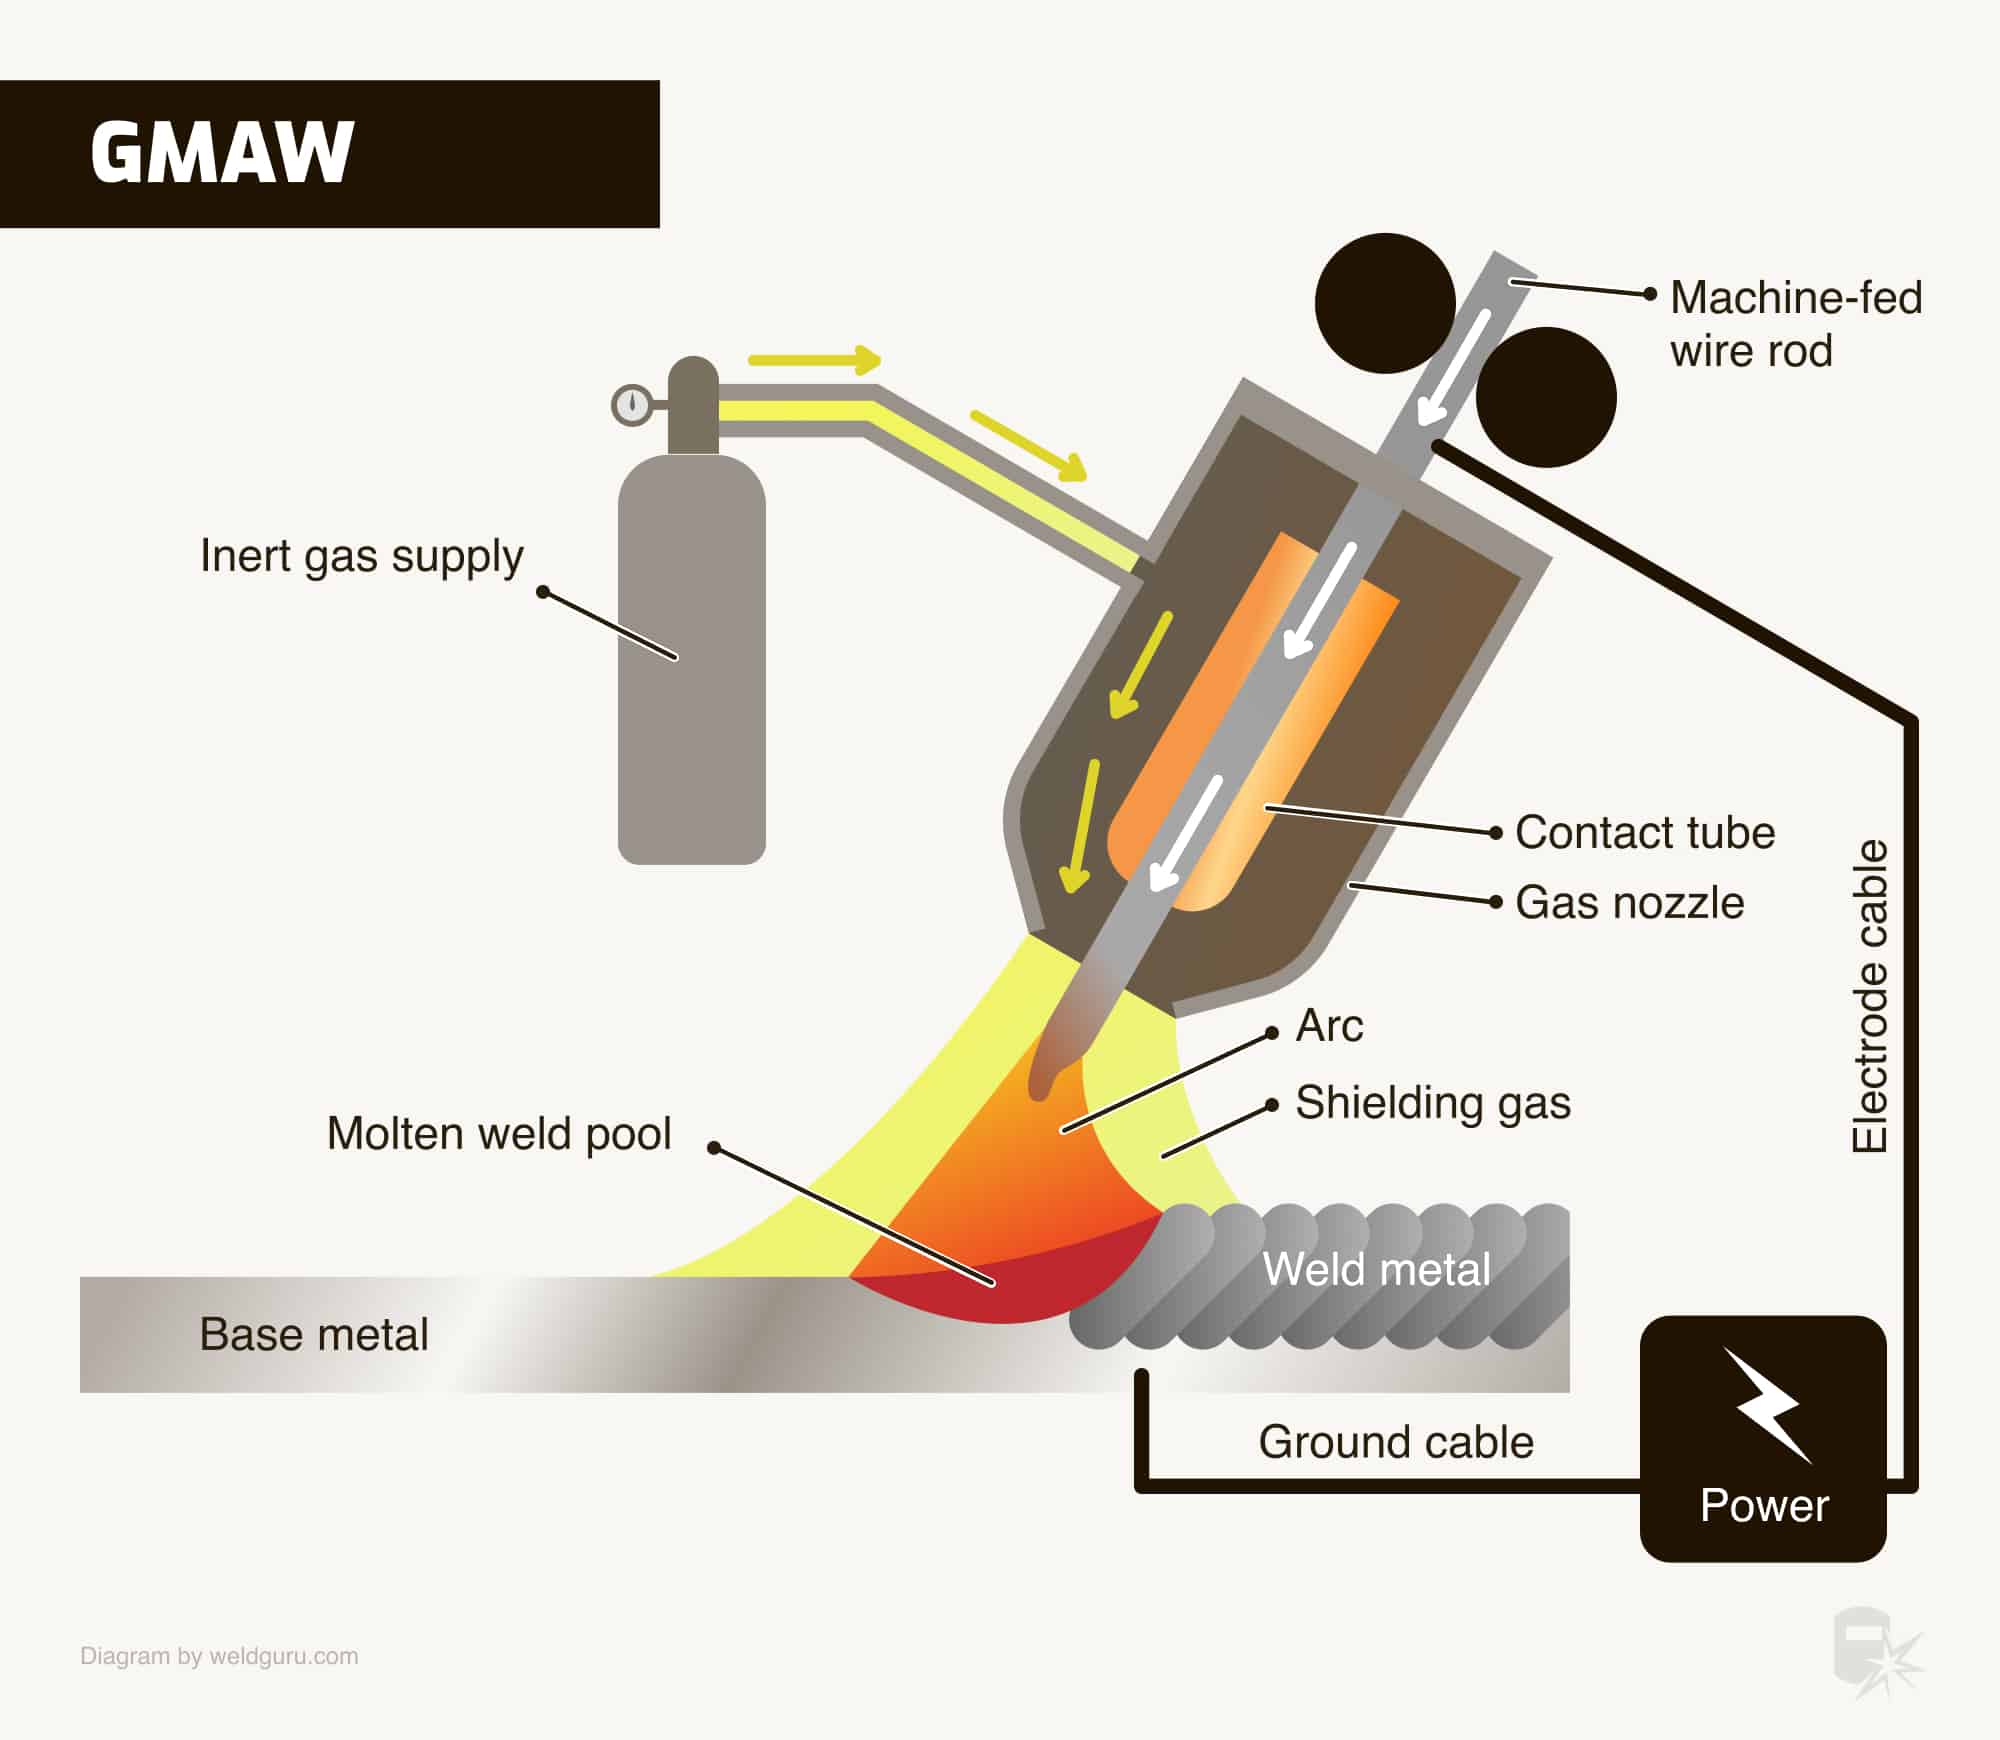 how gmaw works